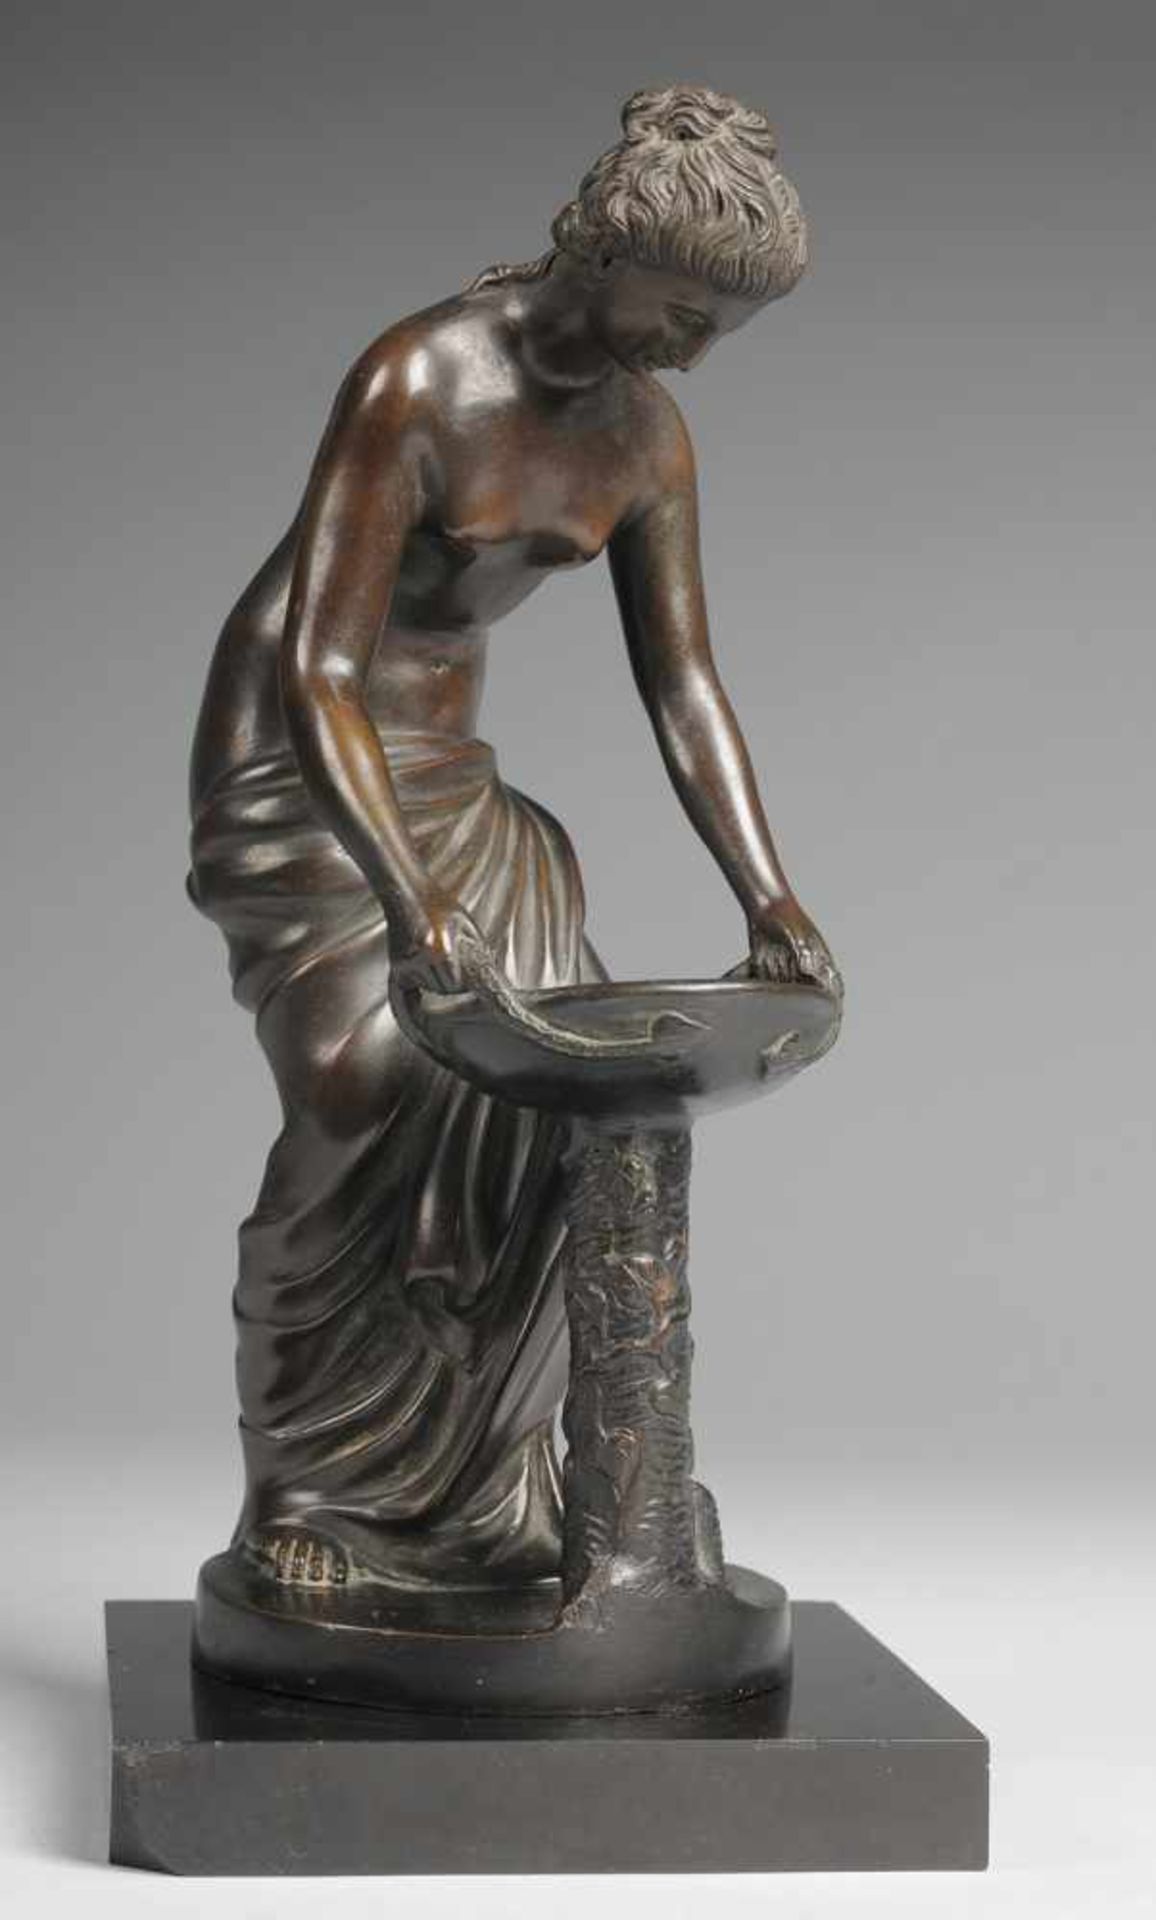 Mythologischer Halbakt Bronze, patiniert. Antikisierende Darstellung einer halbbekleideten